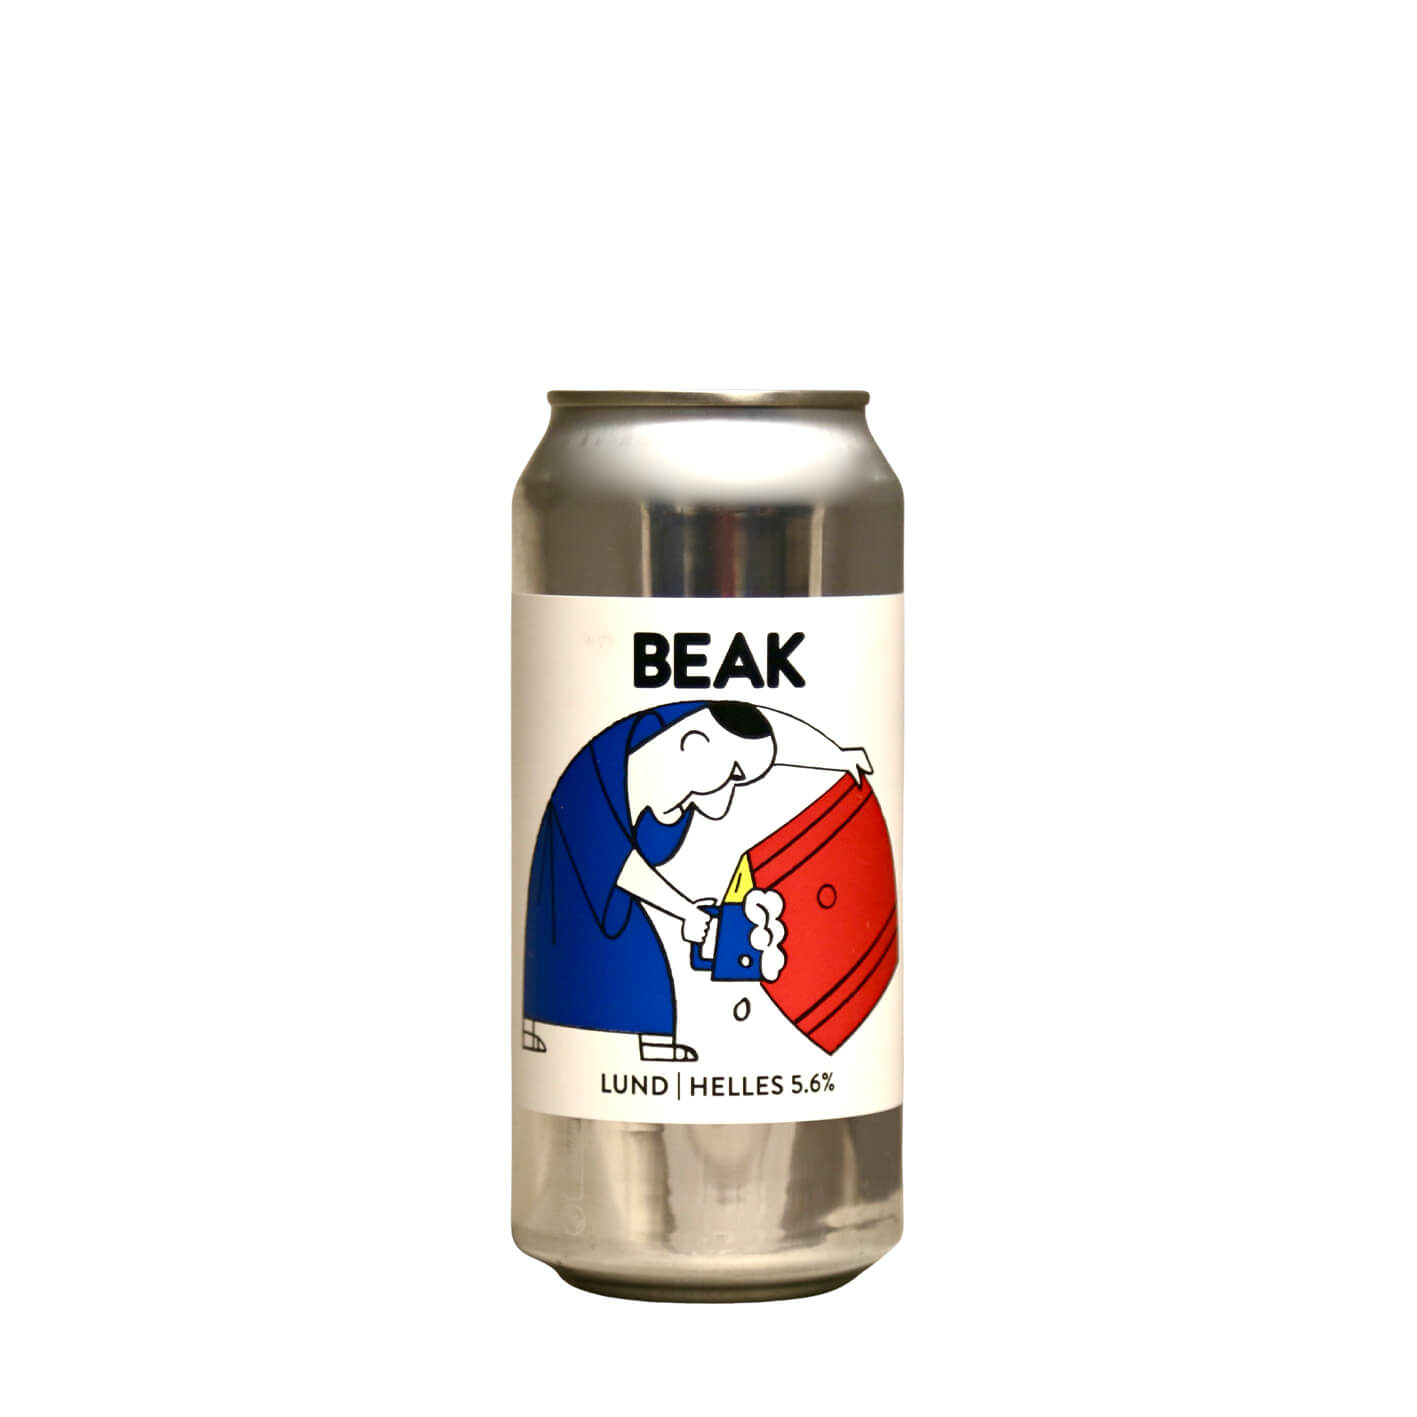 Beak Brewery - Lund Helles 